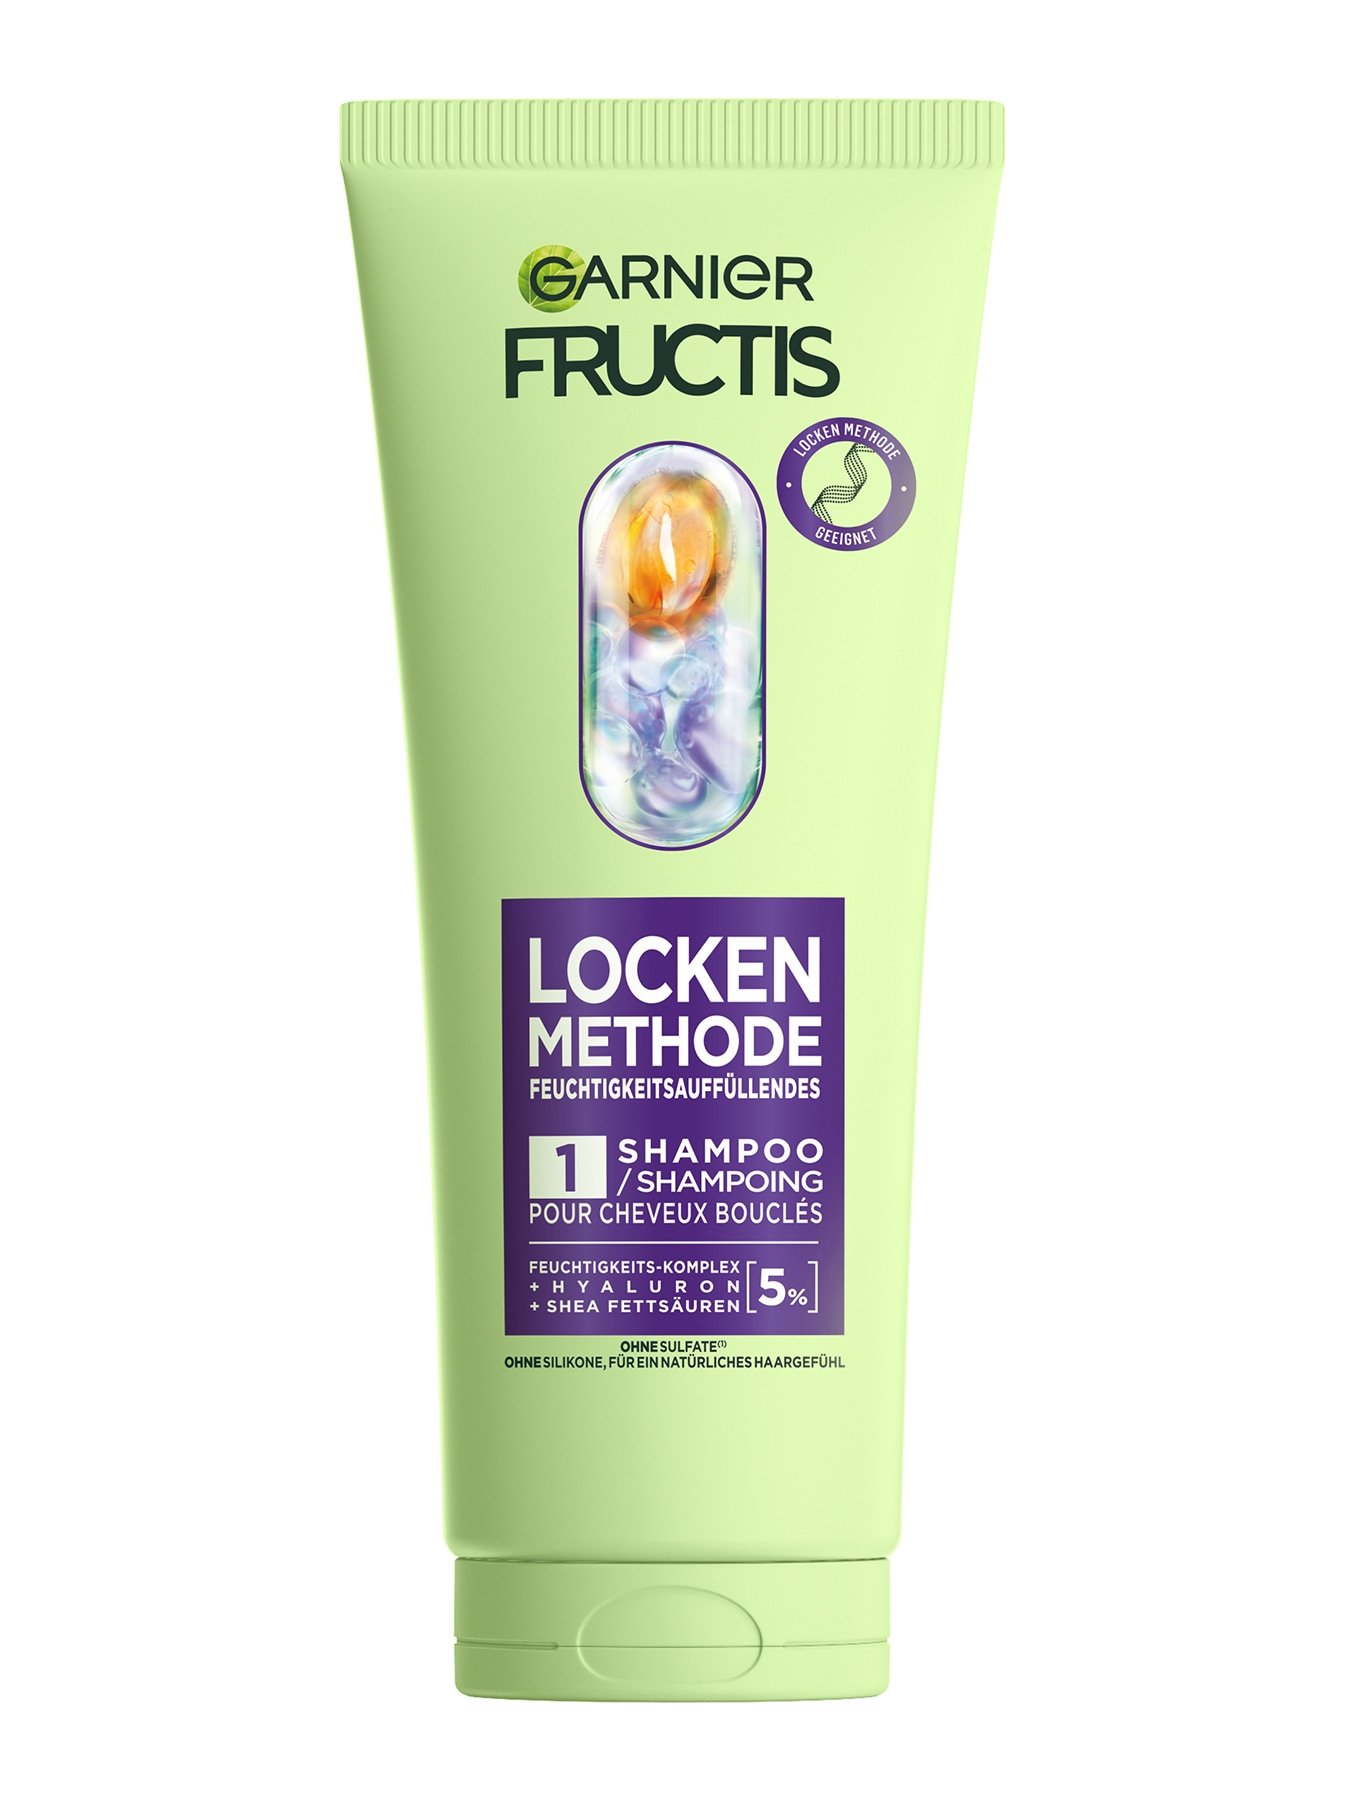 Fructis Locken Methode Feuchtigkeitsauffüllendes Shampoo Produktbild